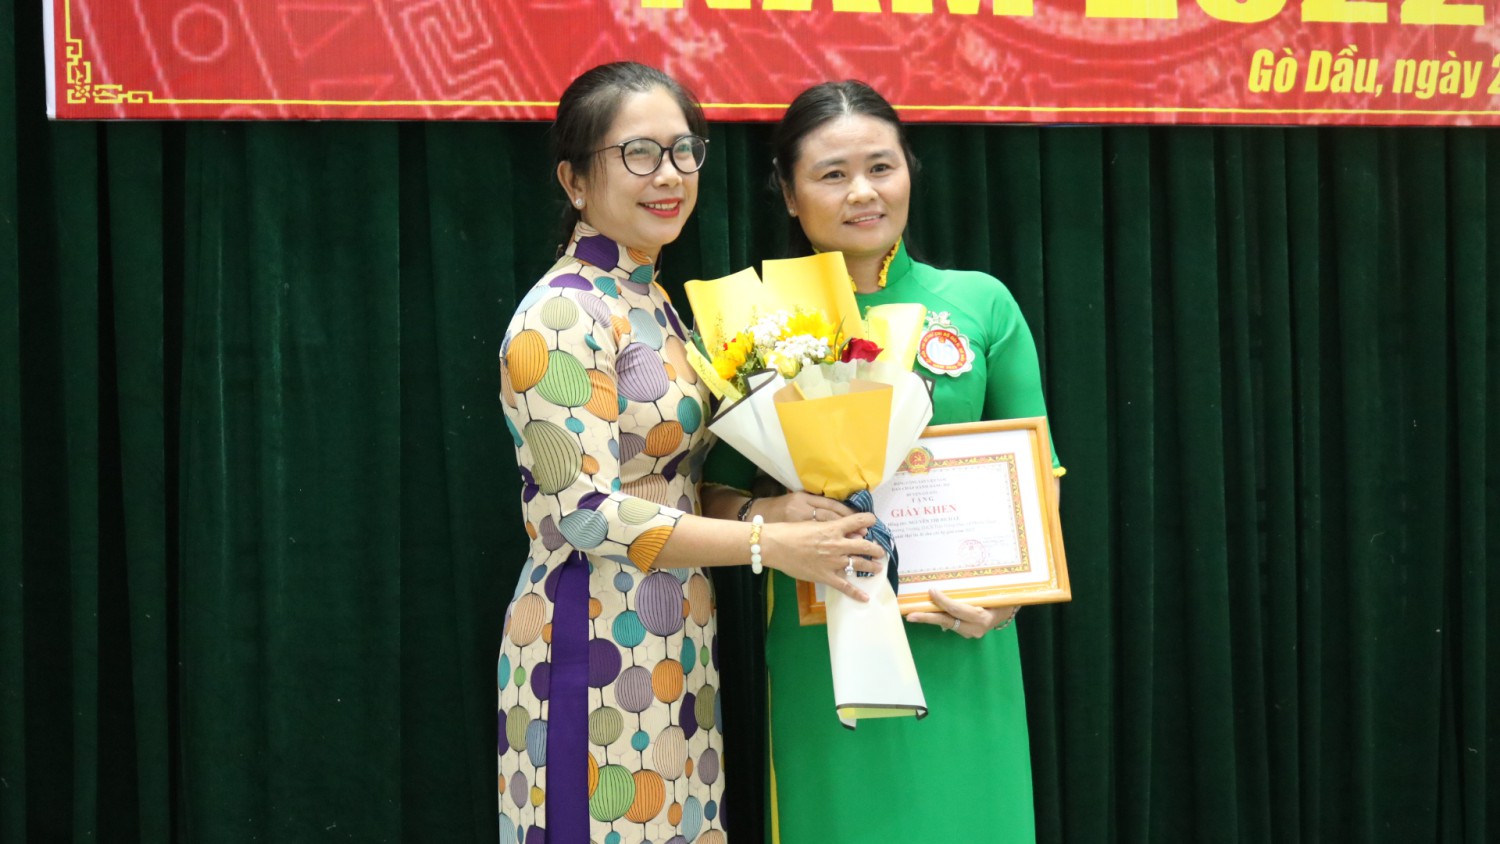 bà Phạm Thị Thúy Hằng- Trưởng Ban Tổ chức Huyện ủy trao giải nhất cho thí sinh Nguyễn Thị Bích Lệ- Bí Thư chi bộ trường THCS Trần Hưng Đạo.